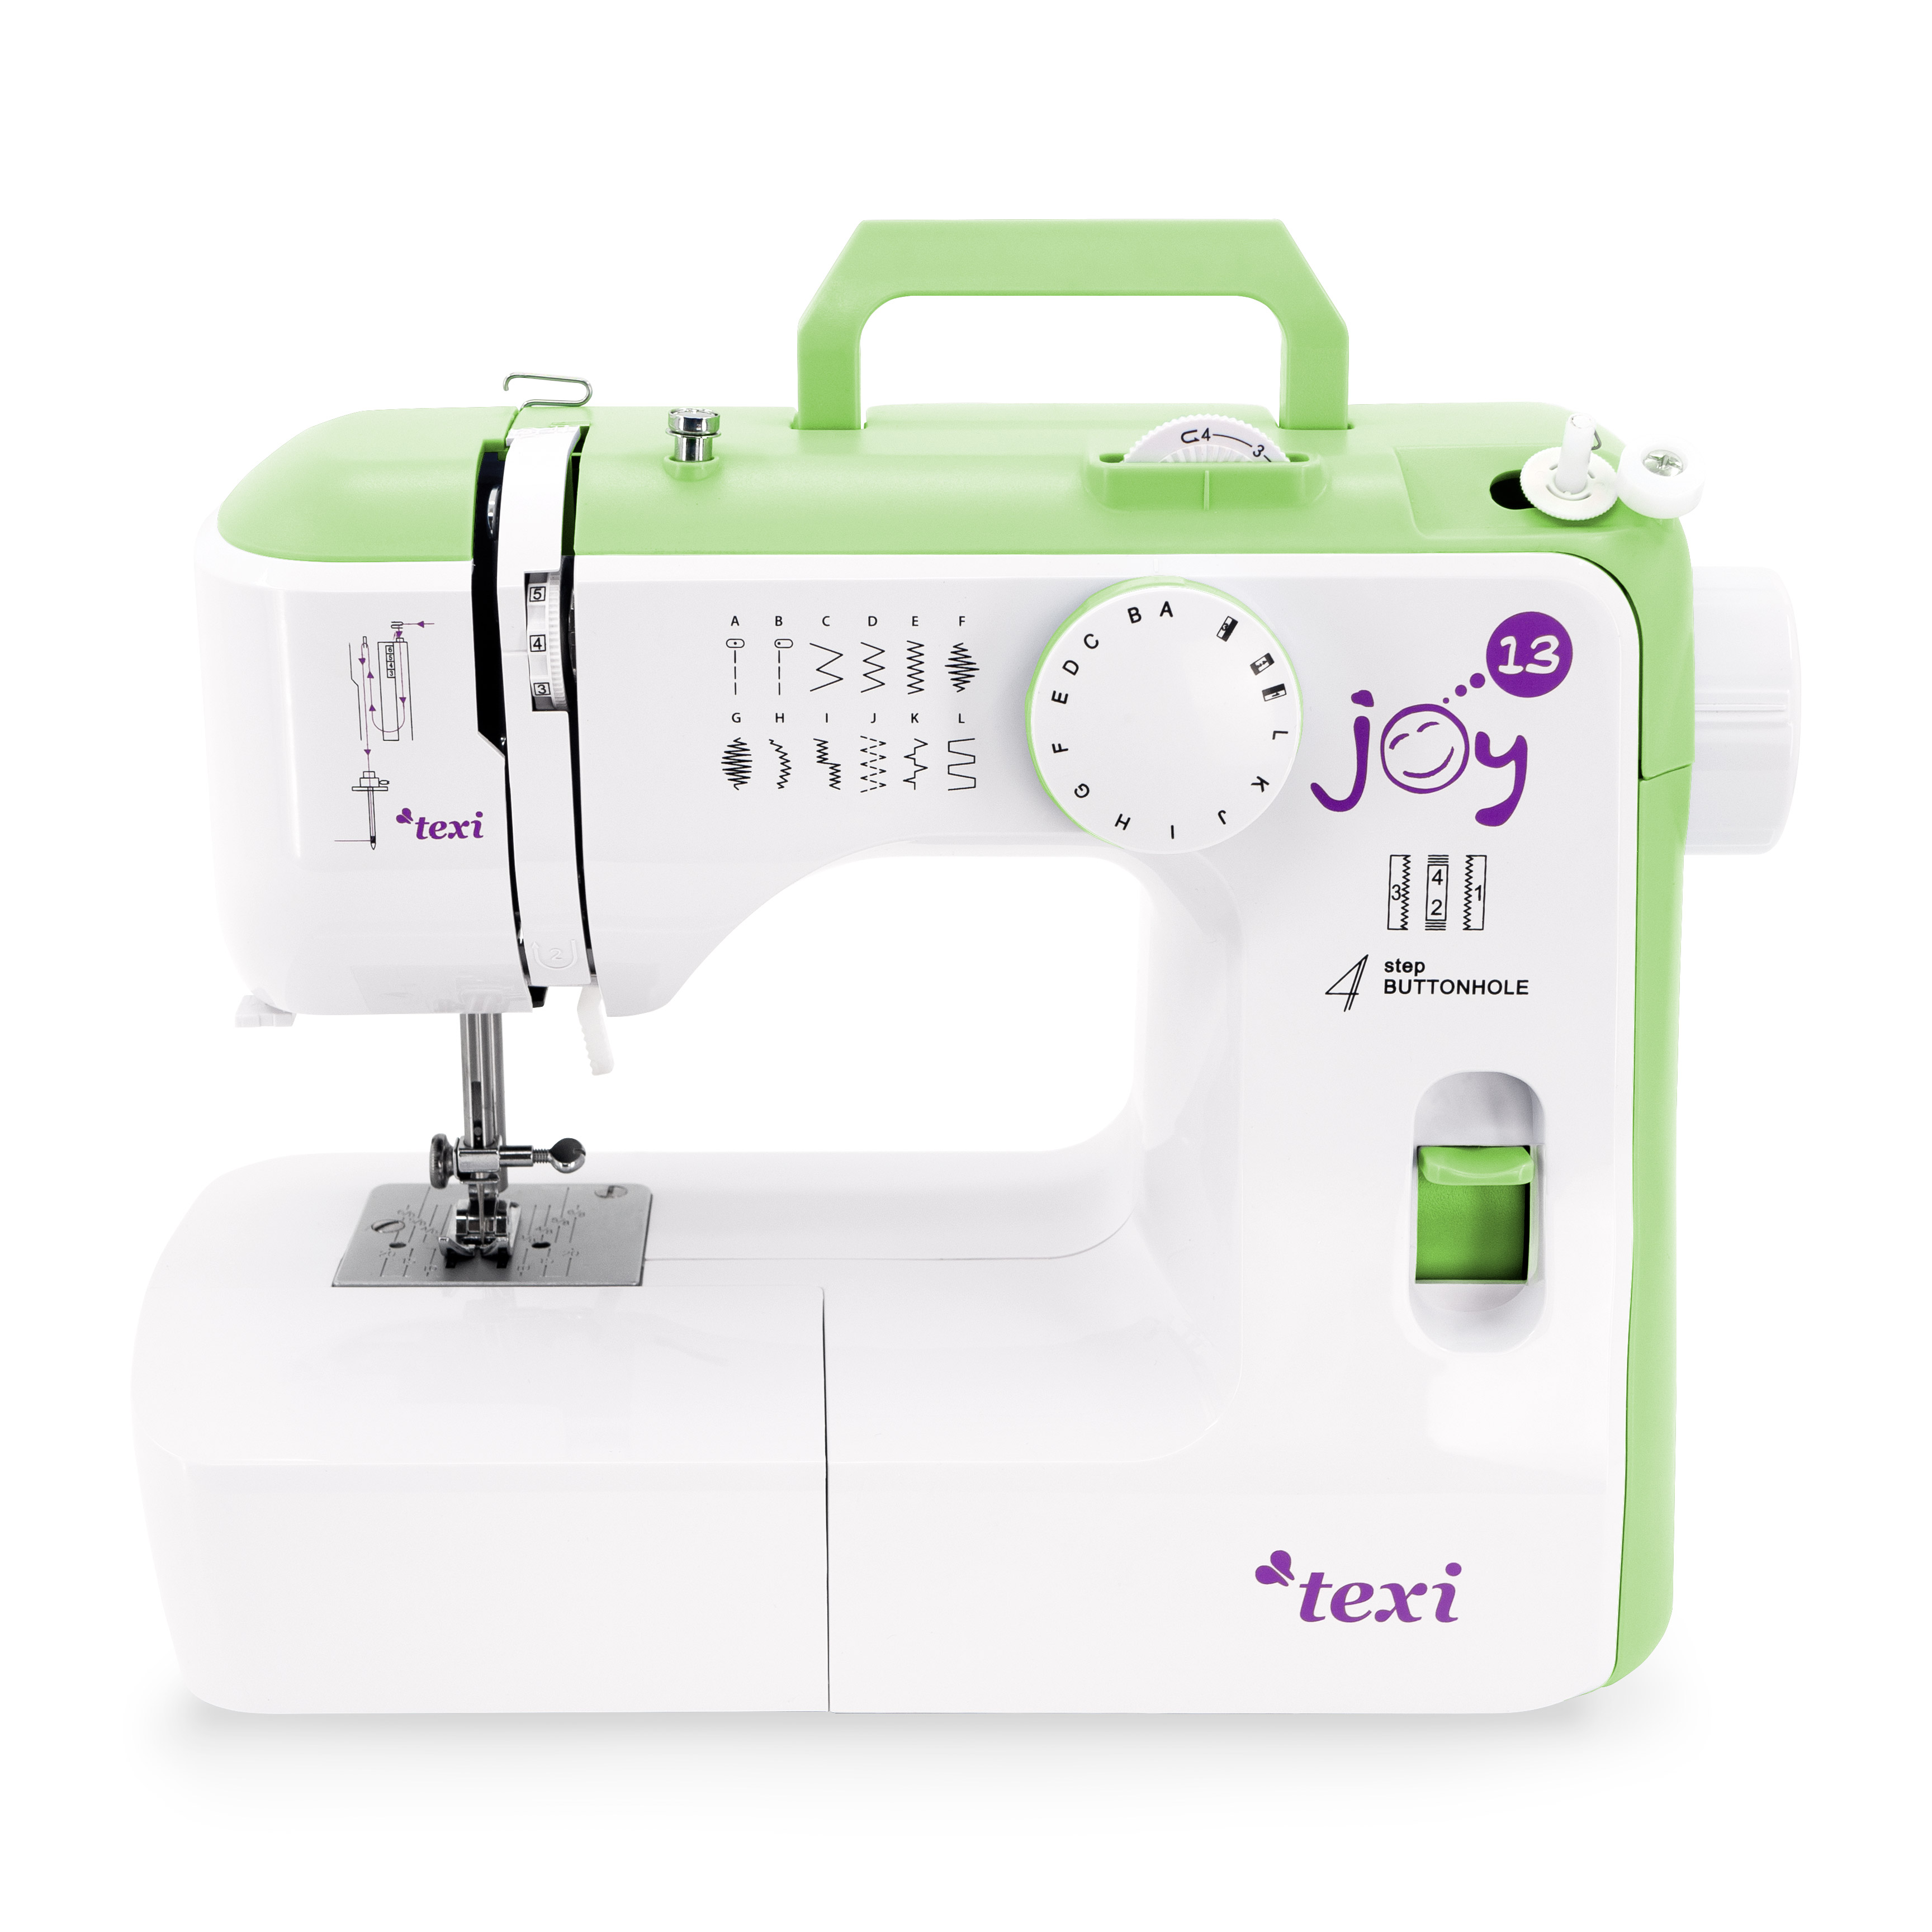 Automatic multifunctional sewing machine, 13 stitches